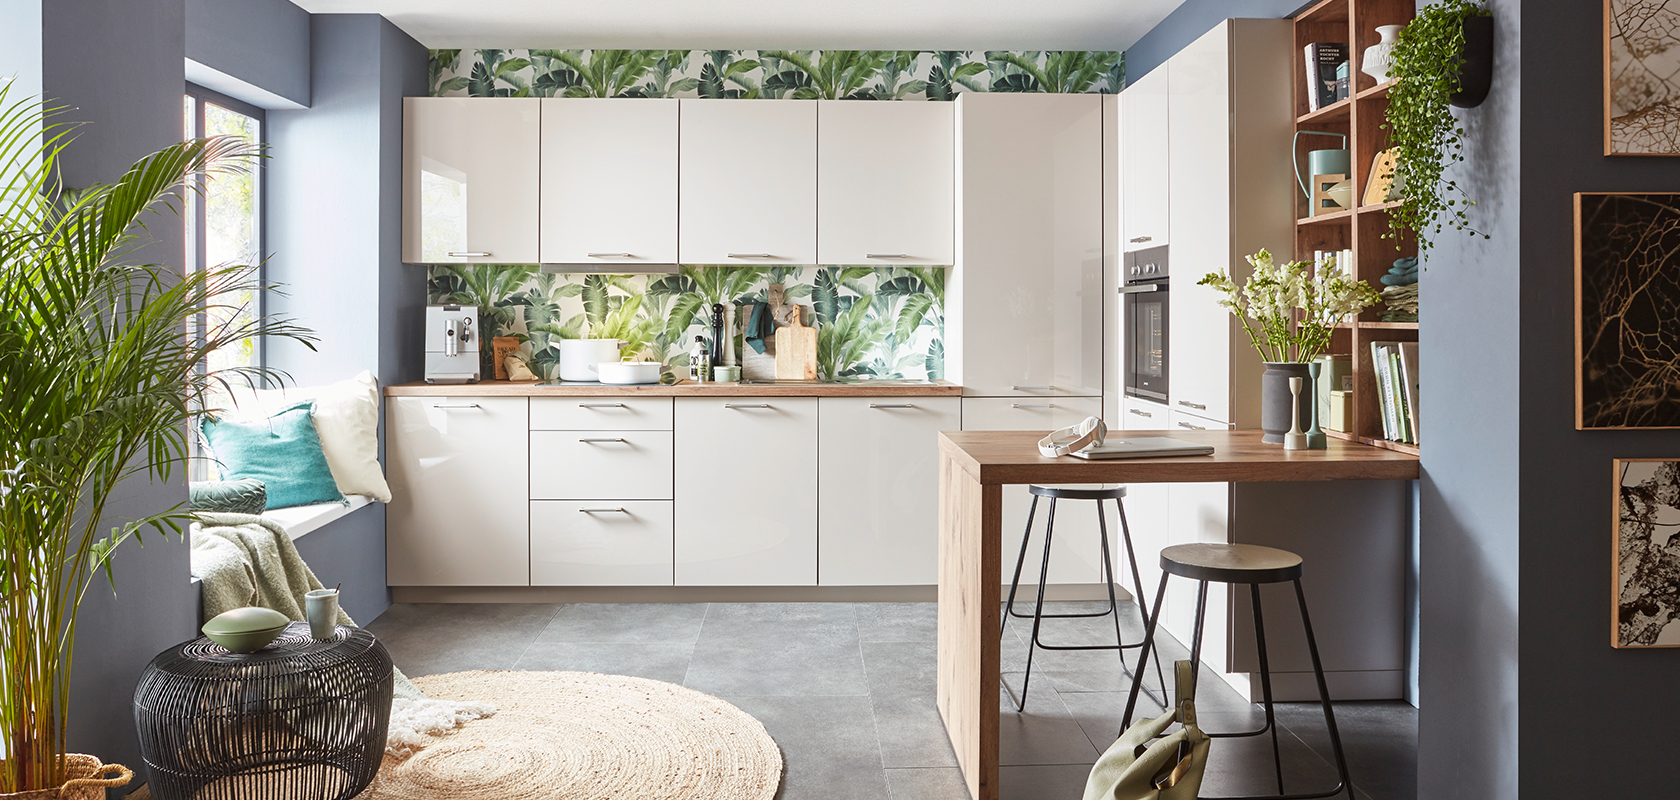 Moderne Kücheninneneinrichtung mit weißen Schränken, tropischem Tapetenmuster, Holzarbeitsplatte, stilvollen Barhockern und grünen Pflanzenakzenten, die einen gemütlichen, zeitgenössischen Raum schaffen.